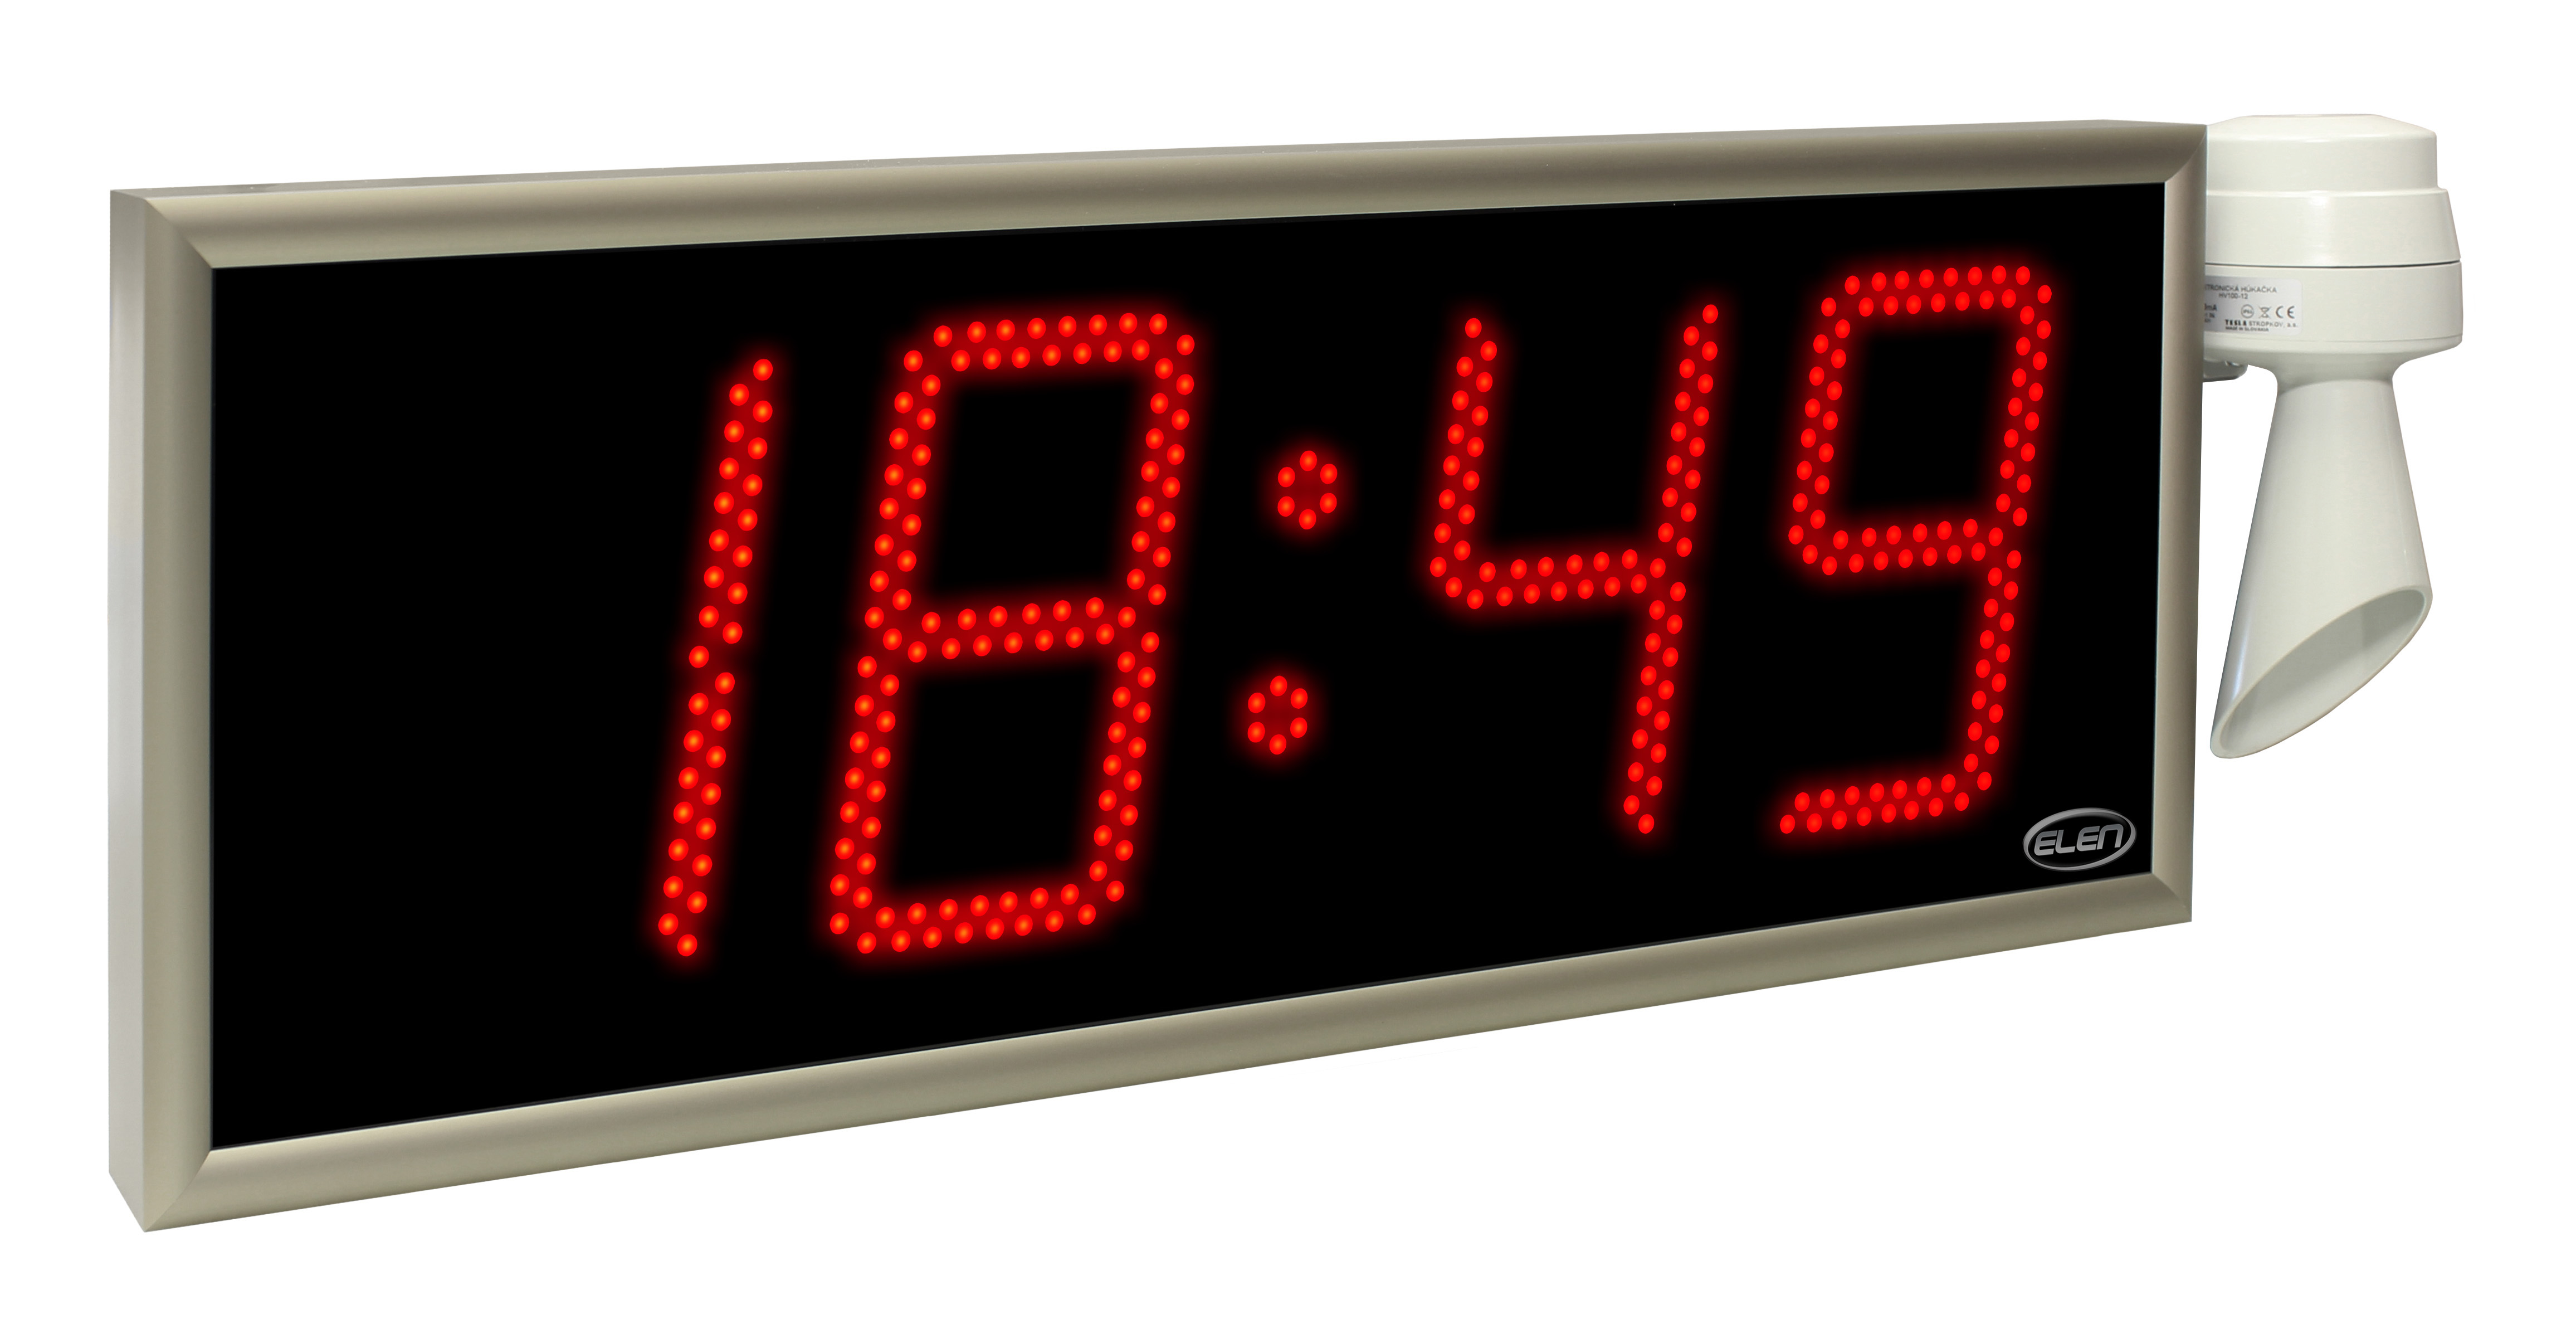 Digital clocks for displaying time -<br/>NDC 160/4 R L20 PoE LAN<br/>-interface PoE LAN